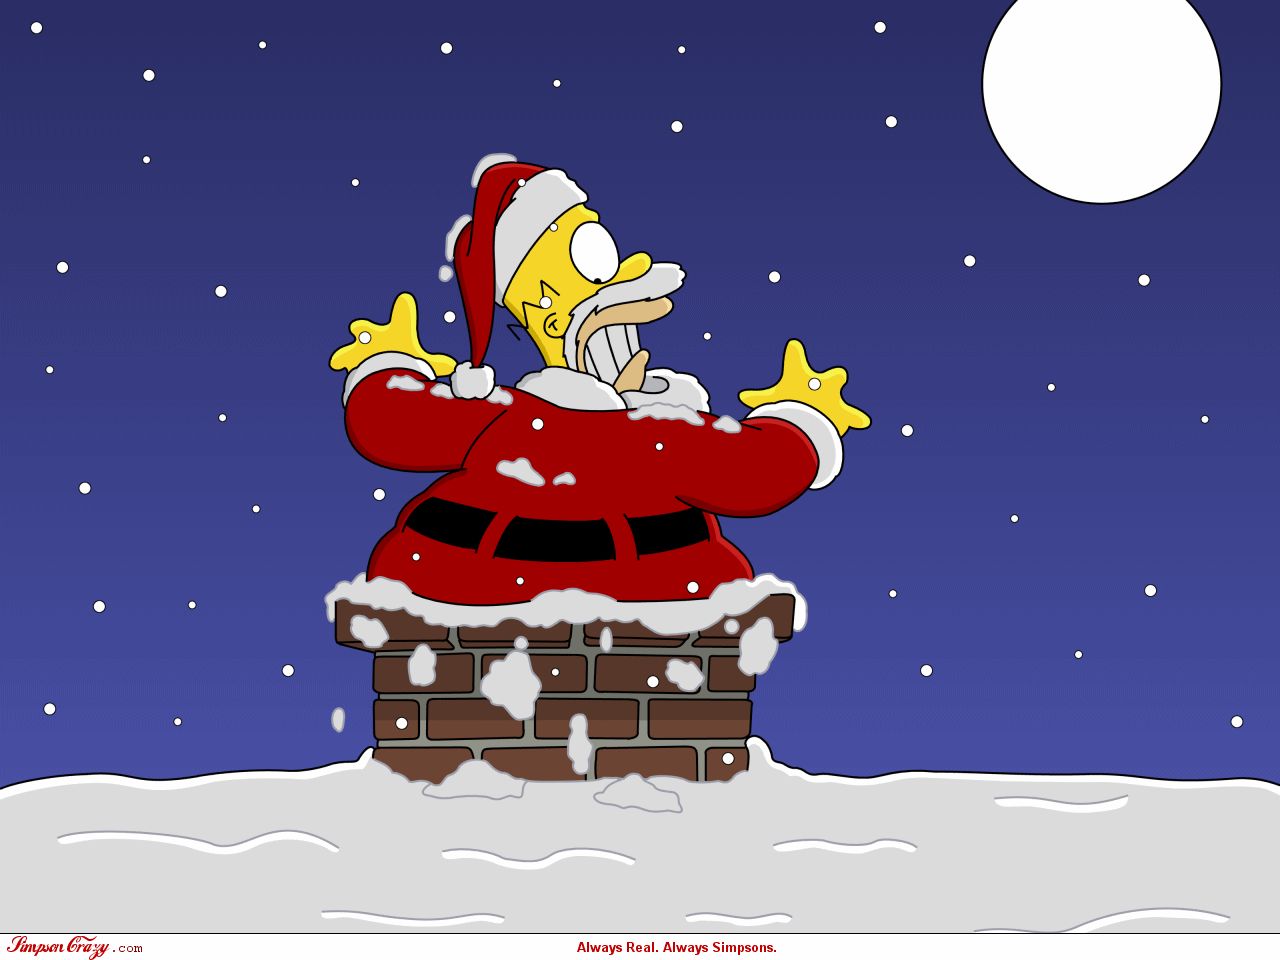 Скачать обои бесплатно Рождество, Телешоу, Симпсоны, Гомер Симпсон картинка на рабочий стол ПК